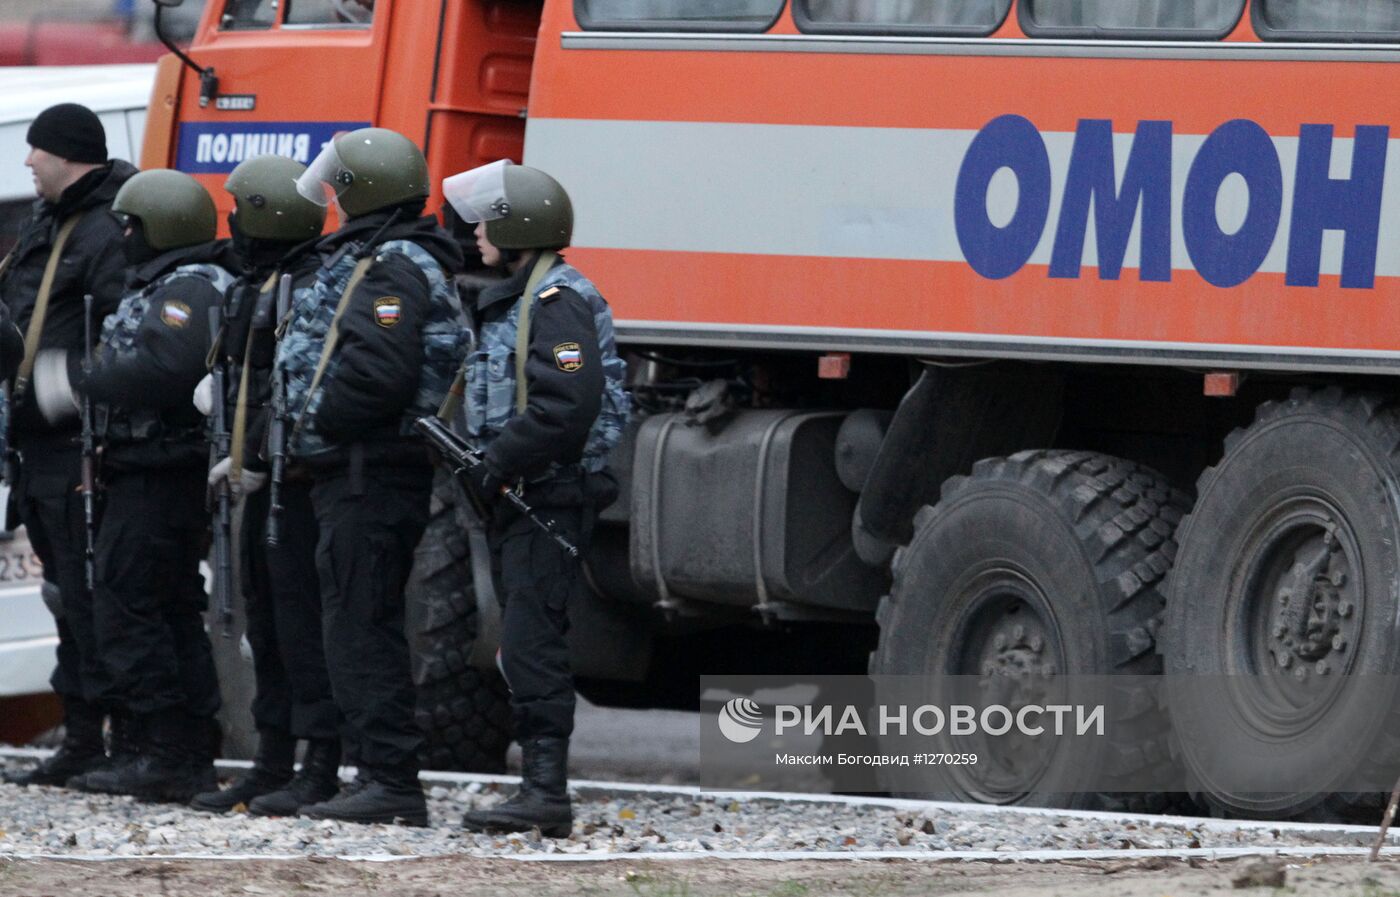 Спецоперация по уничтожению группы боевиков в Казани